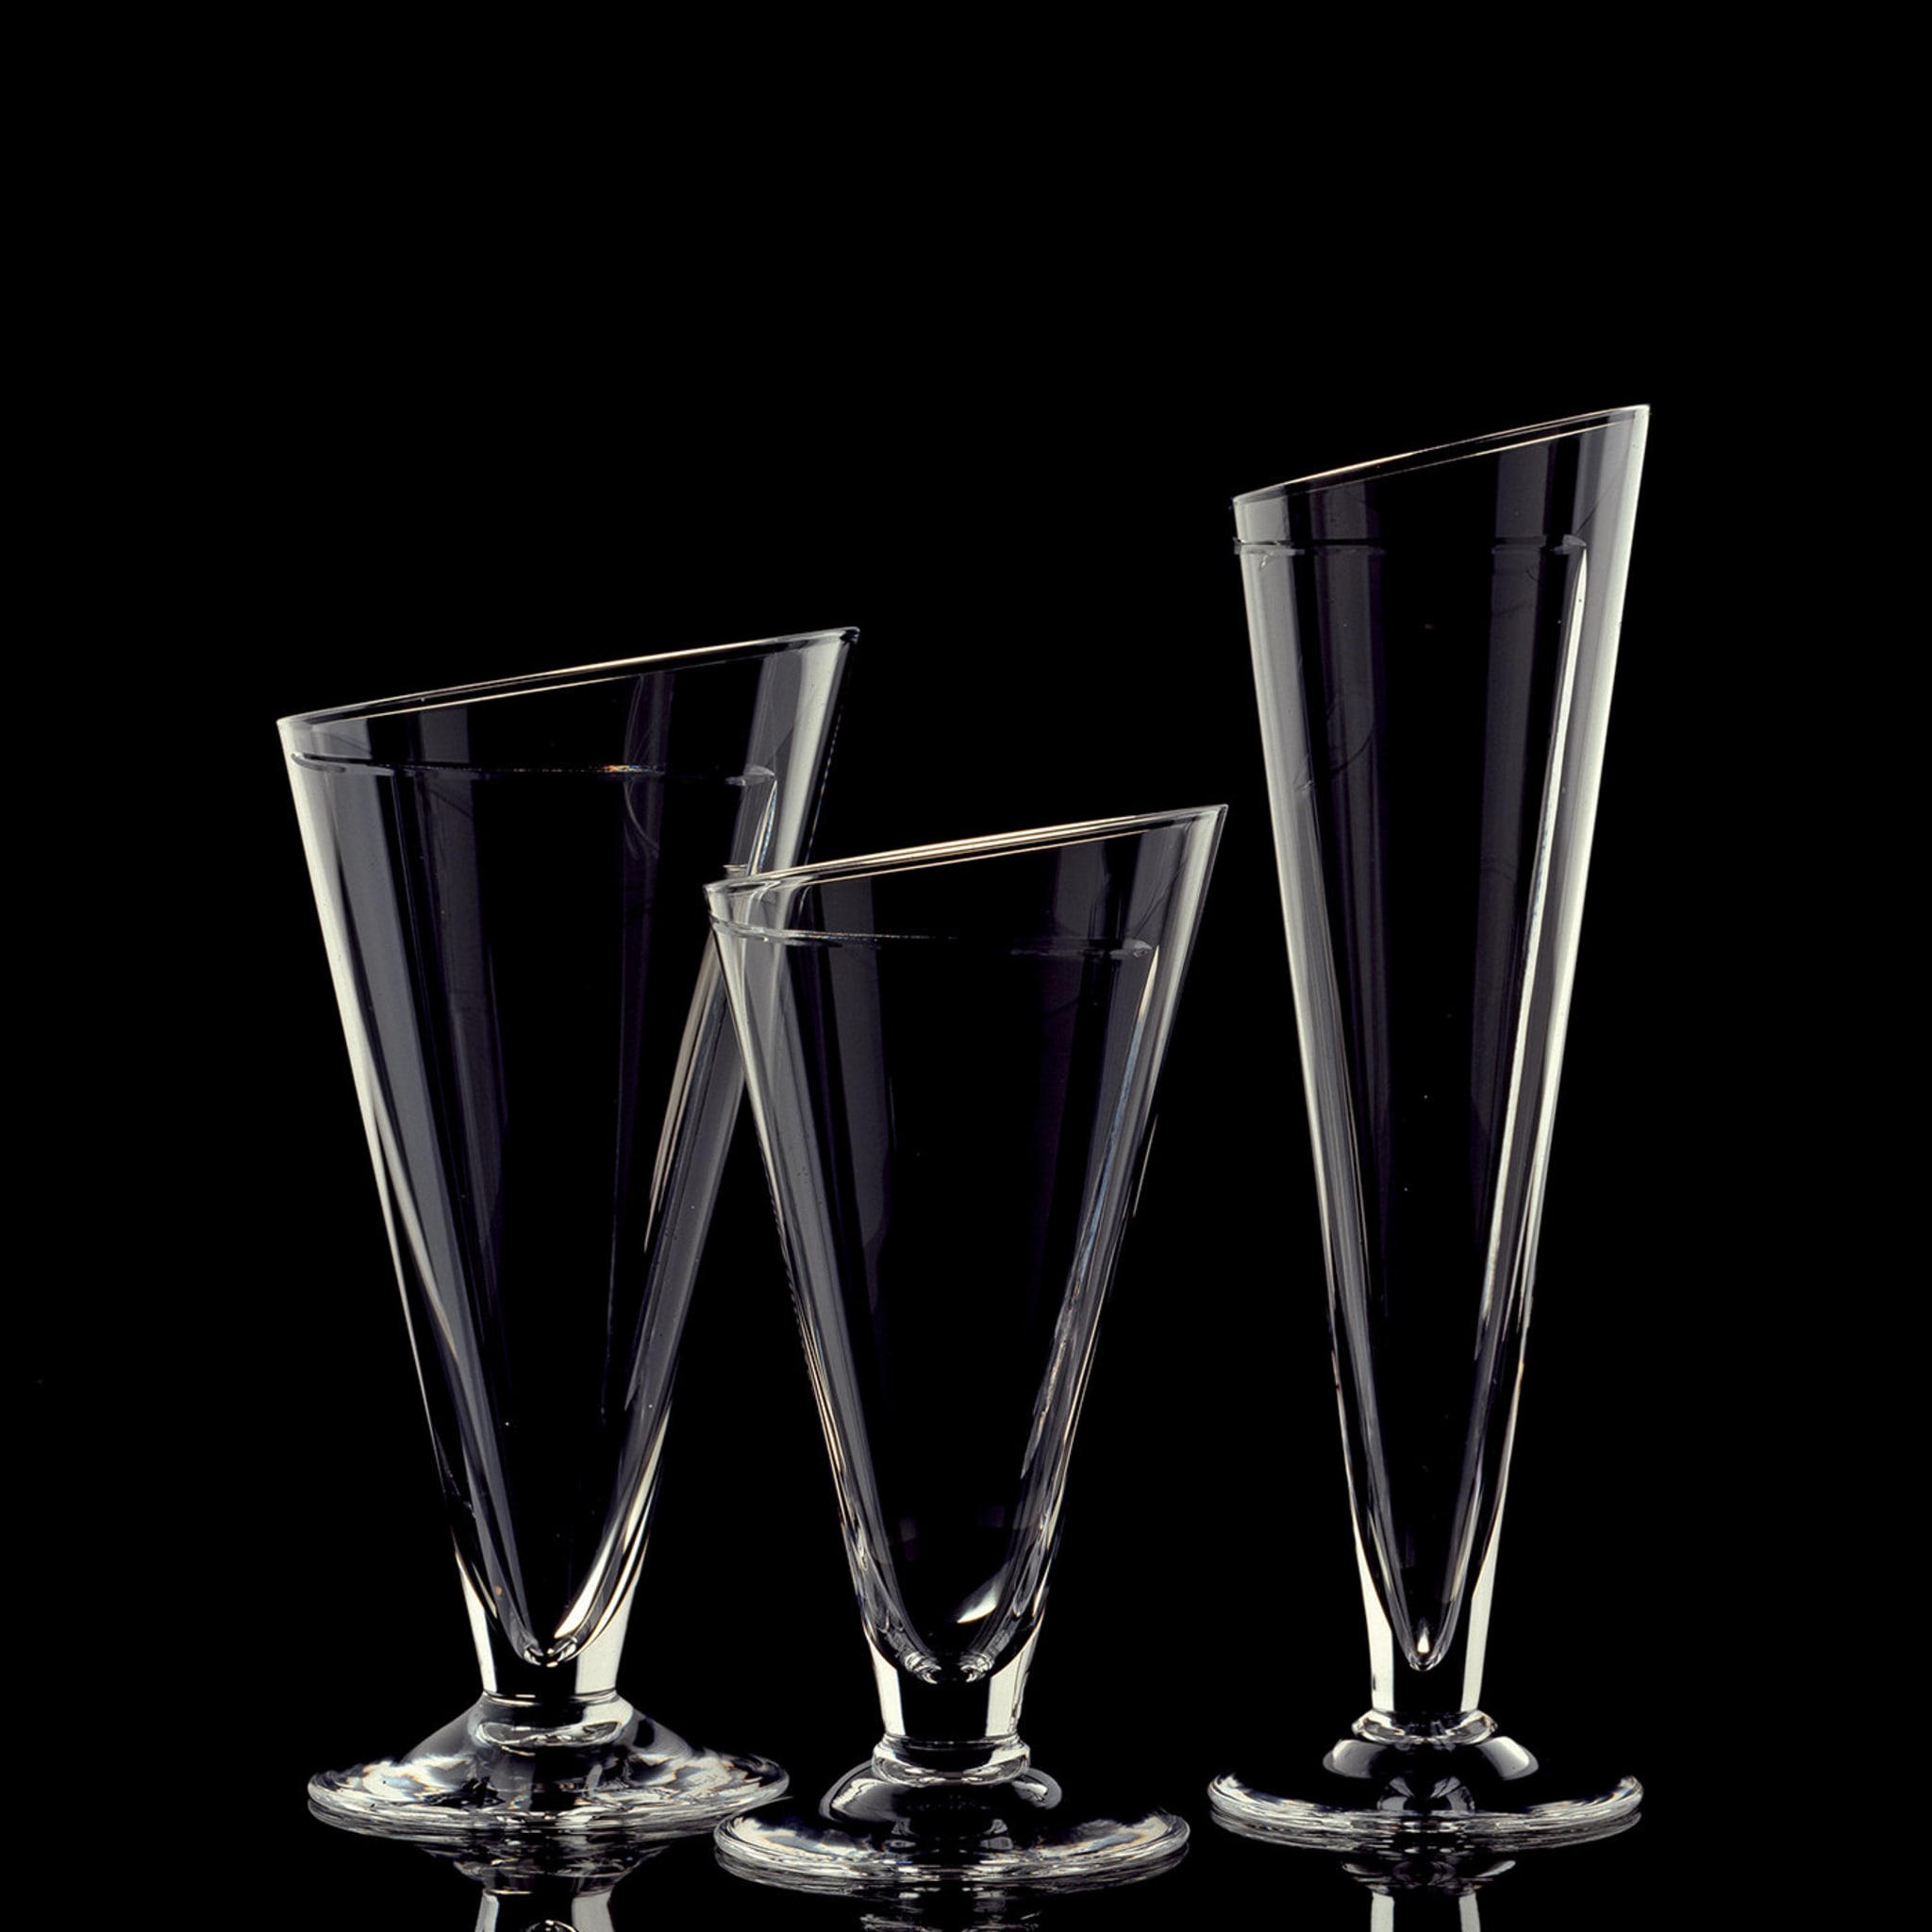 Cartoccio Set of 6 Wine Glasses - Alternative view 2